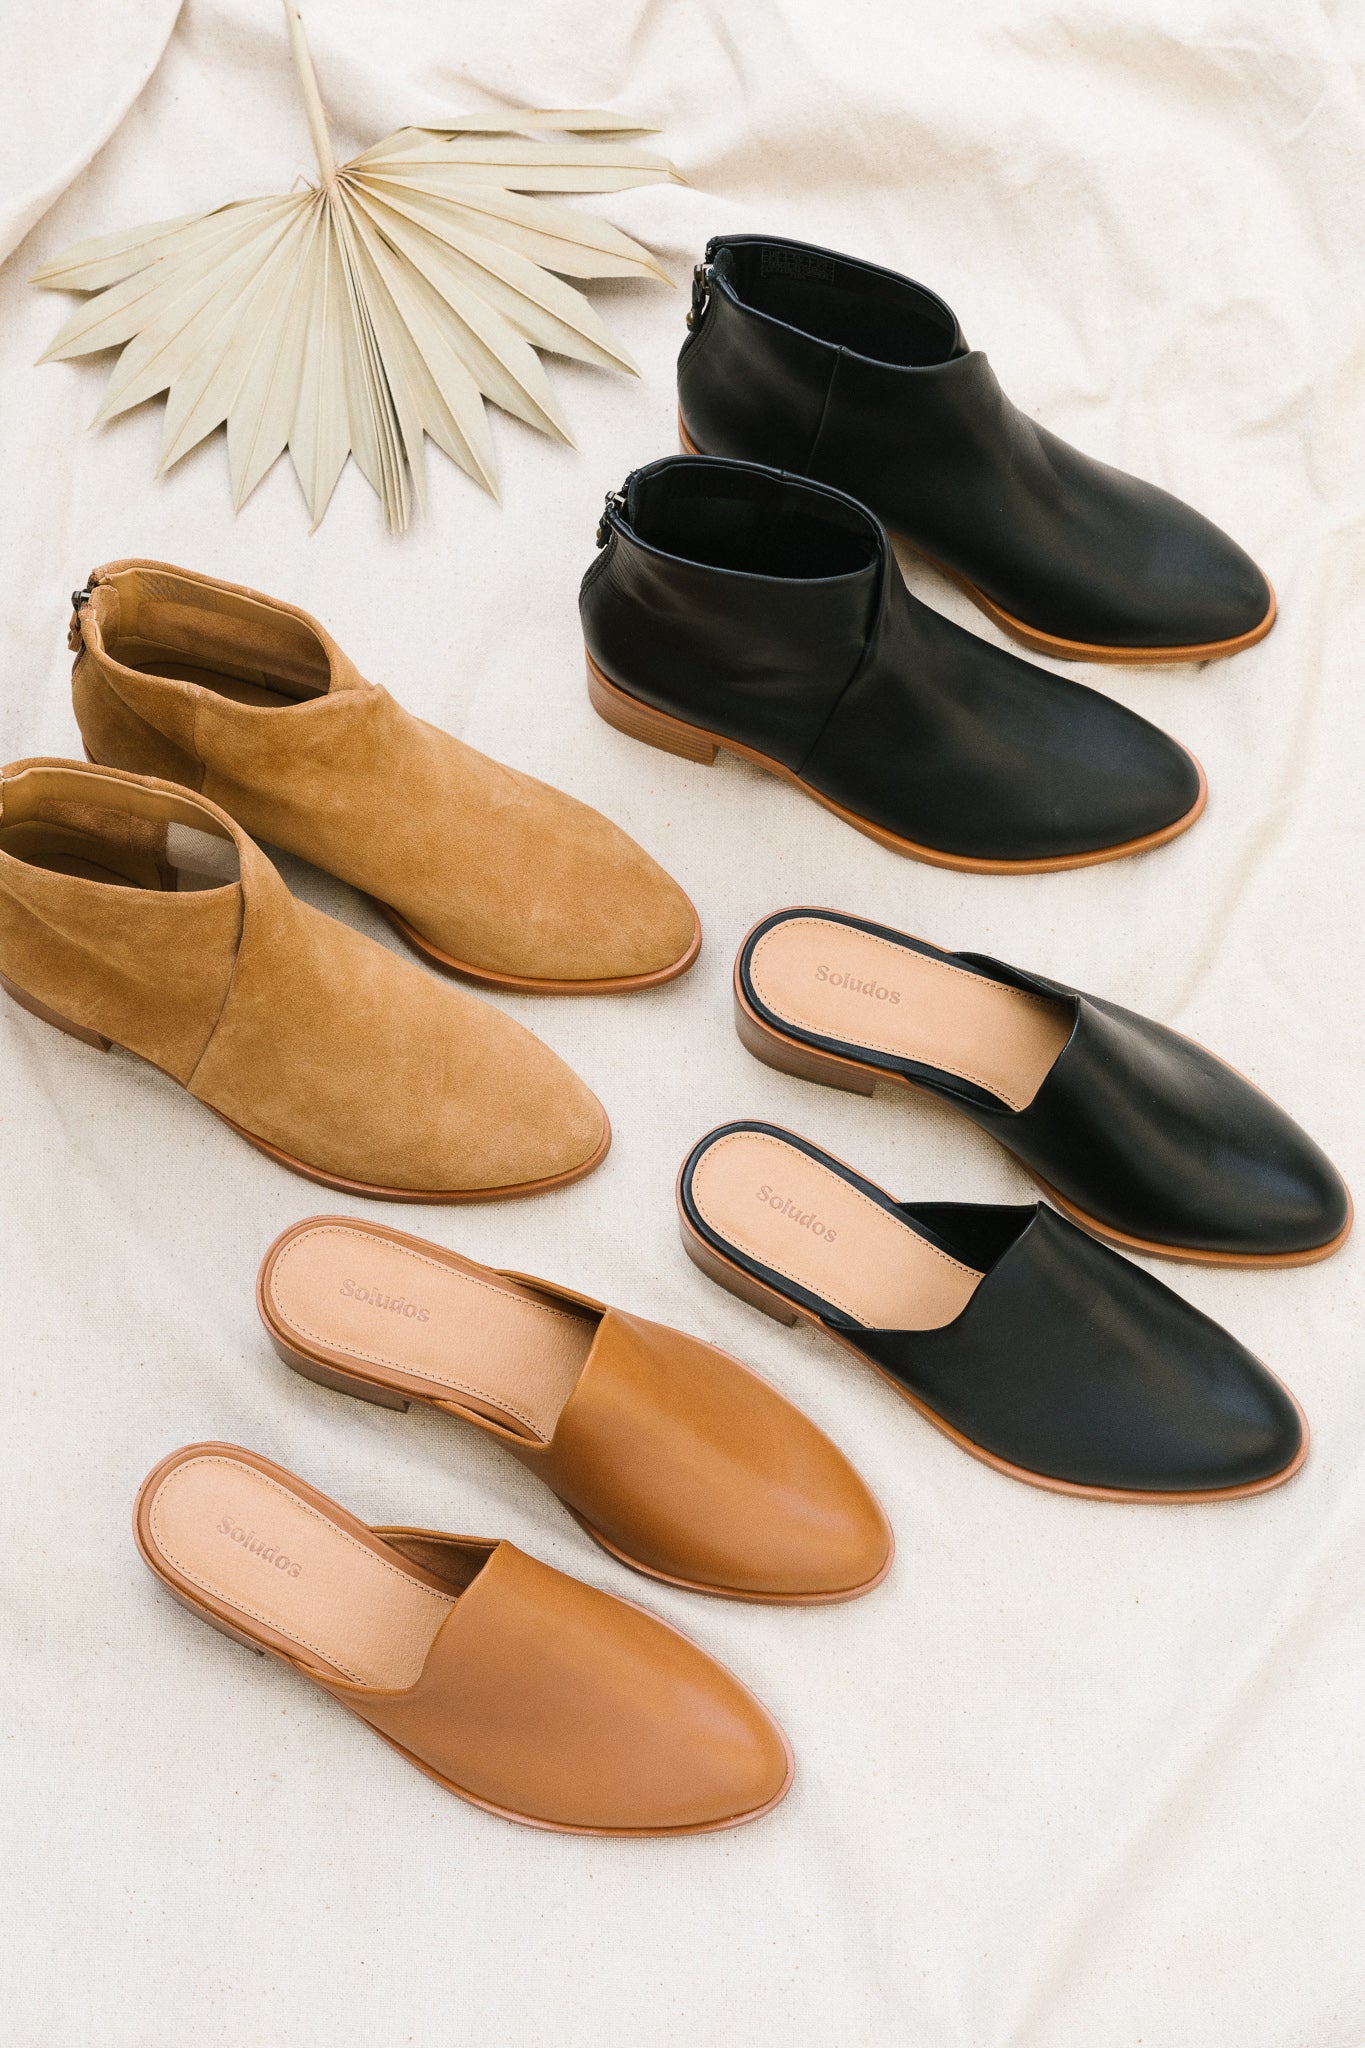 Shop Men's Dress Shoes, Casual Shoes, Sandals & Boots